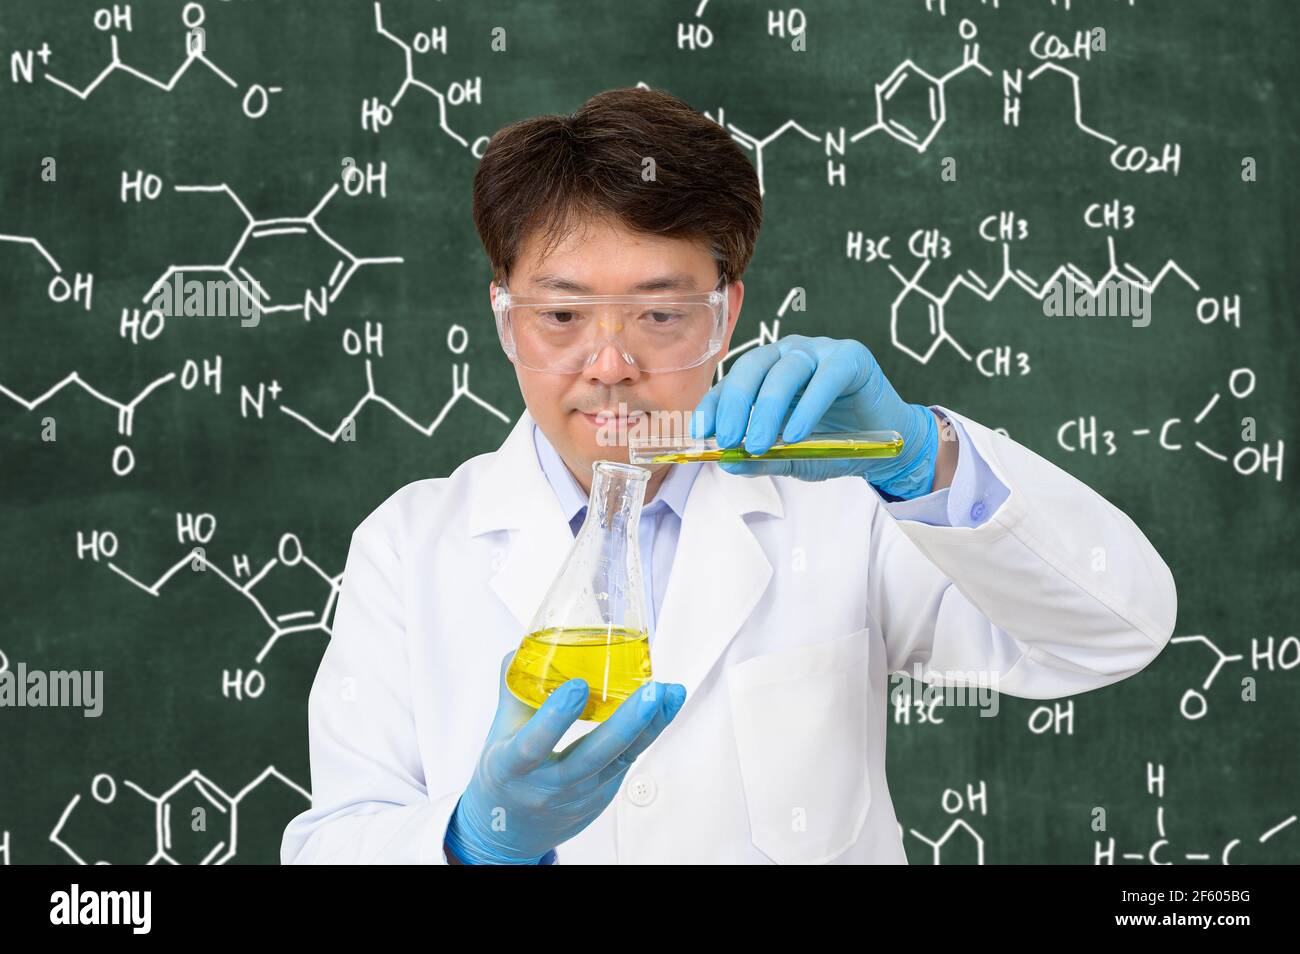 Un scientifique asiatique de milieu d'année portant des gants et tenant un conteneur expérimental devant un tableau noir avec une formule écrite dessus. Banque D'Images